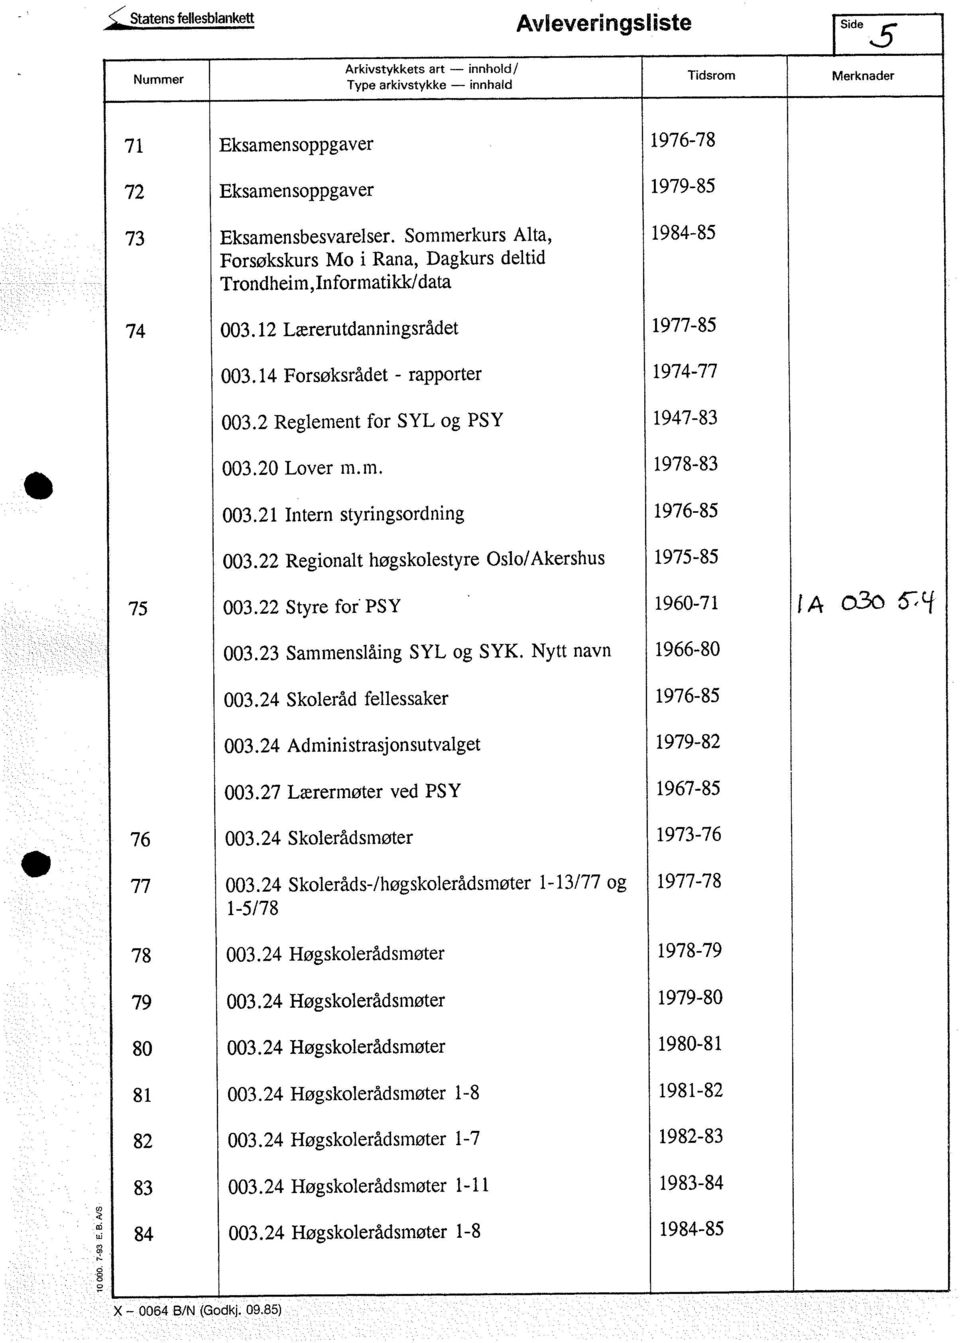 2 Reglement for SYL og PSY 1947-83 003.20 Lover m.m. 1978-83 003.21 Intern styringsordning 1976-85 003.22 Regionalt høgskolestyre Oslo/Akershus 1975-85 75 003.22 Styre for PSY 1960-71 j A 030 t f 003.